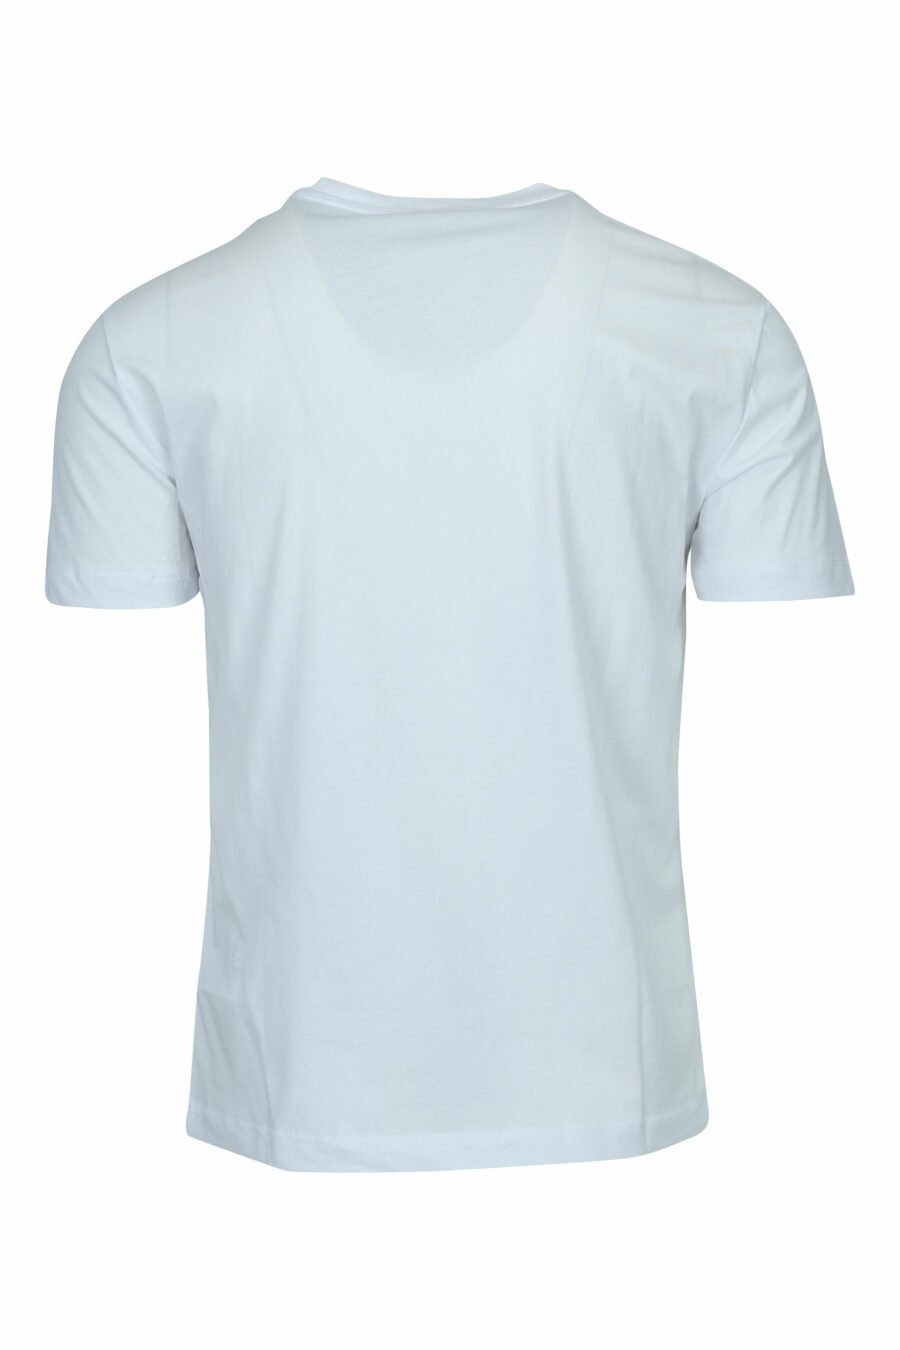 Camiseta blanca con maxilogo "lux identity" en degradé - 8057970673118 1